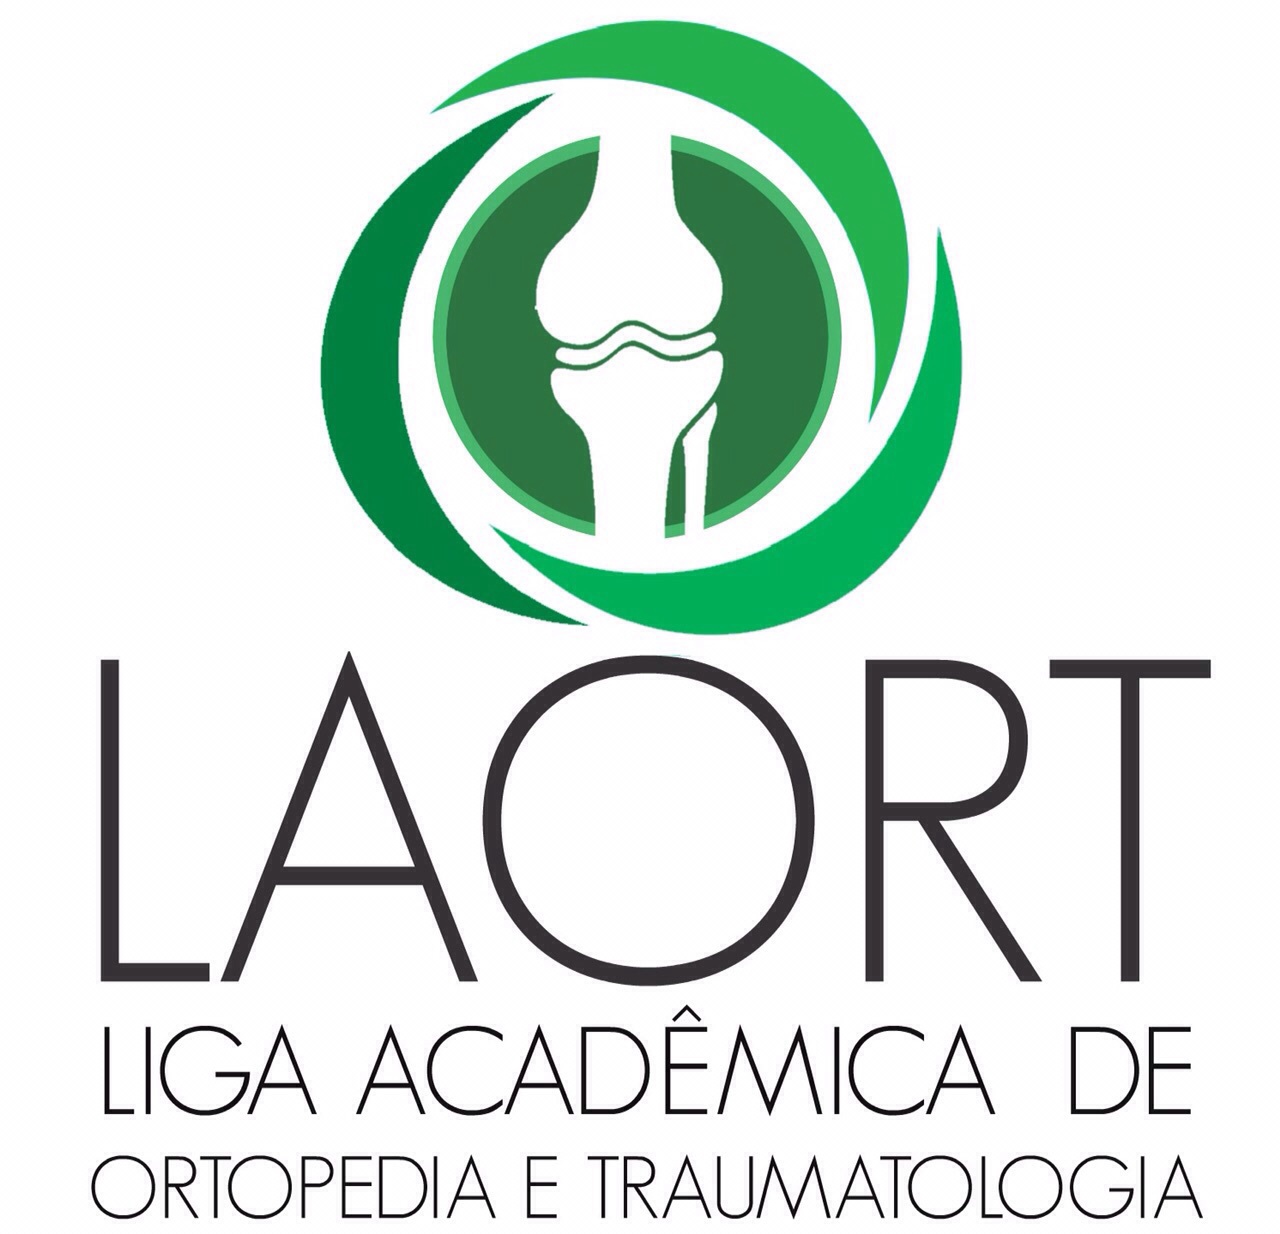 Liga Acadêmica de Ortopedia e Traumatologia